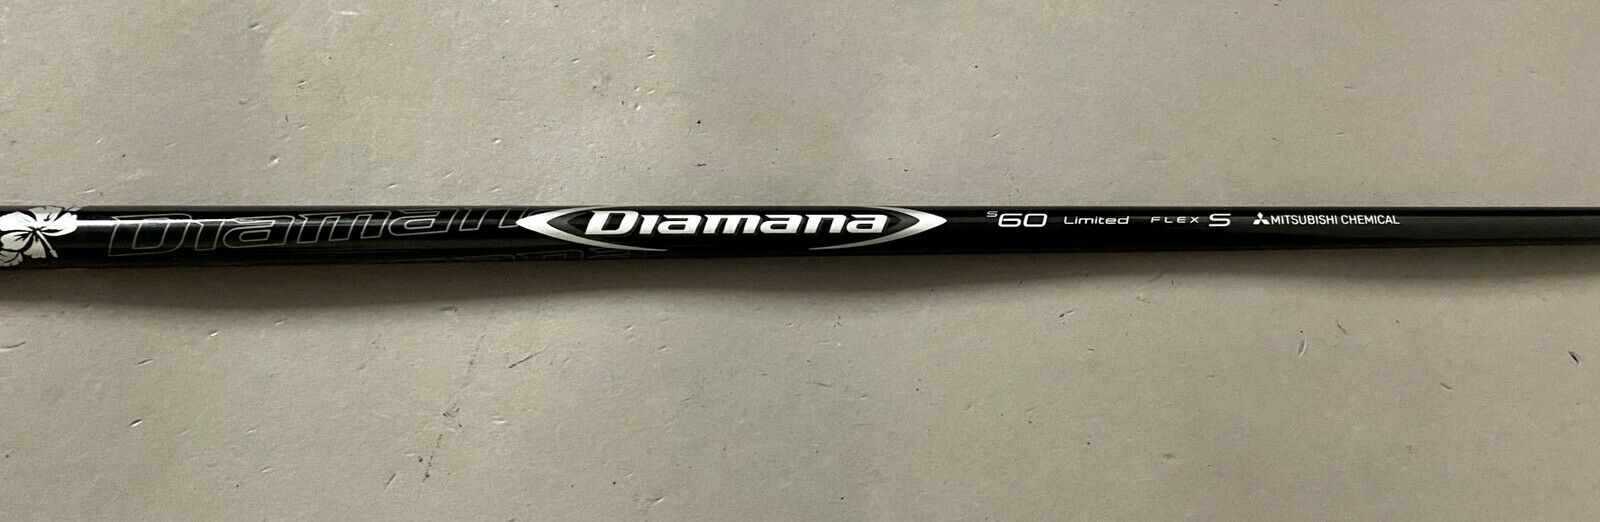 ディアマナ s60 Limited フレックスS - クラブ